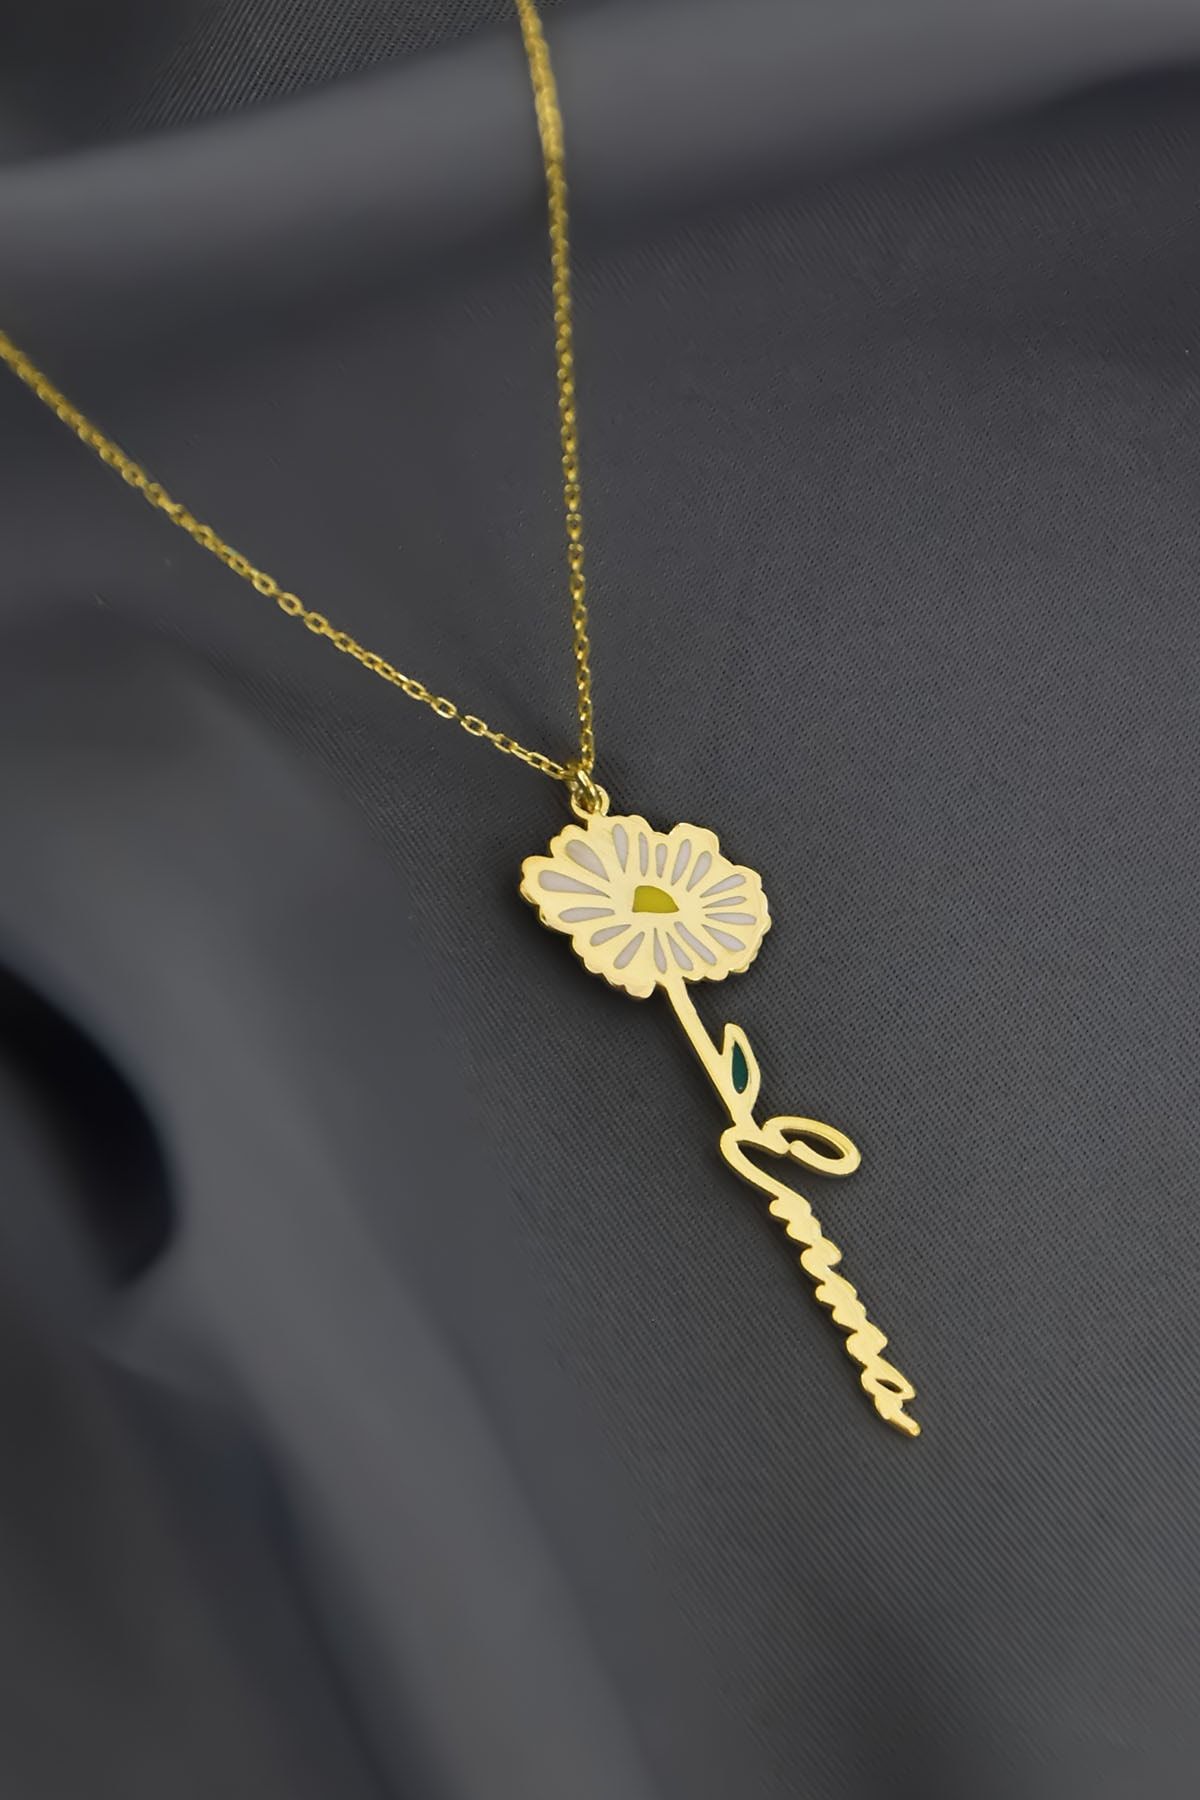 Papatya Silver 925 Ayar Gümüş Gold Kaplama Özel Tasarım Mineli Doğum Nisan Ayı Çiçeği, Isim Kolye